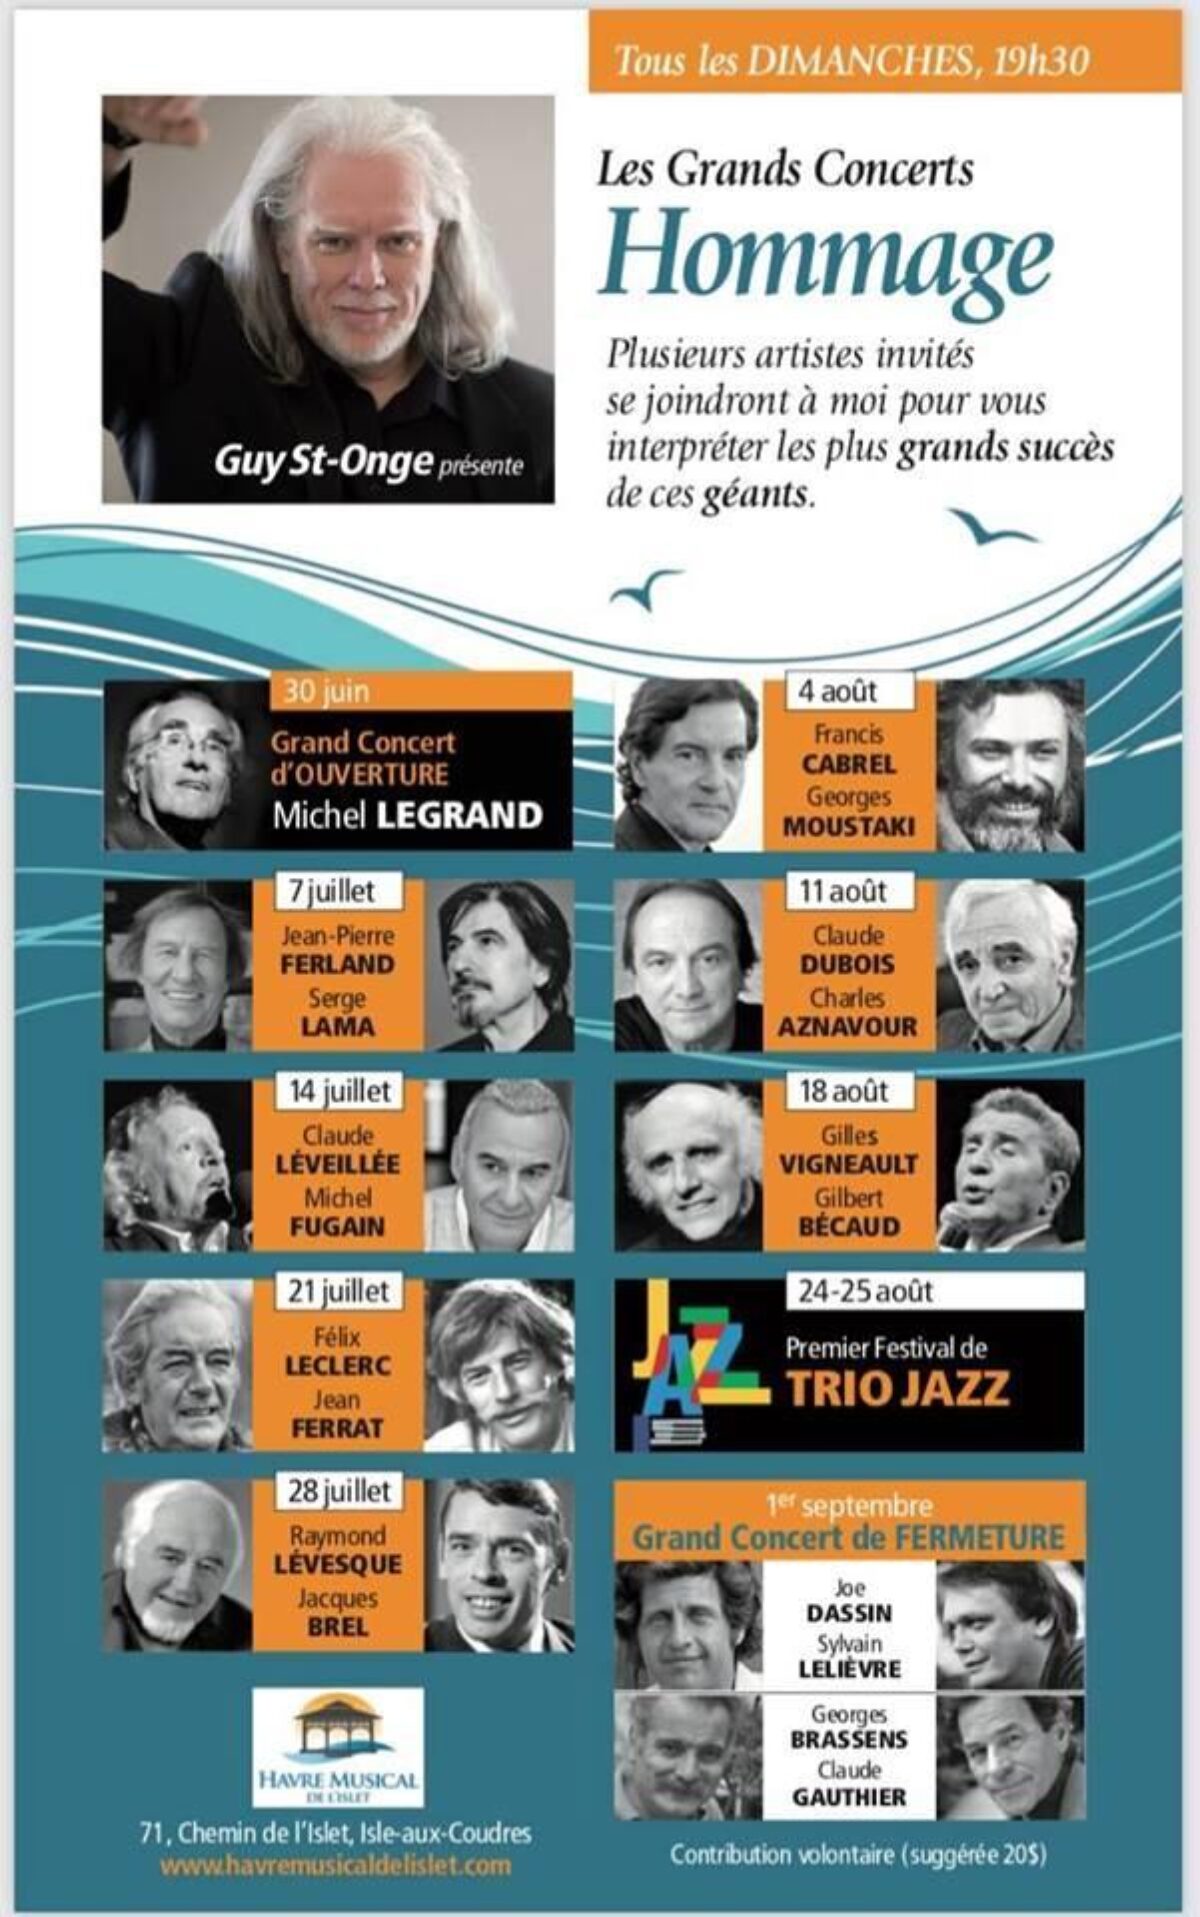 Les Grands Concerts Hommage de M. Guy St-Onge!